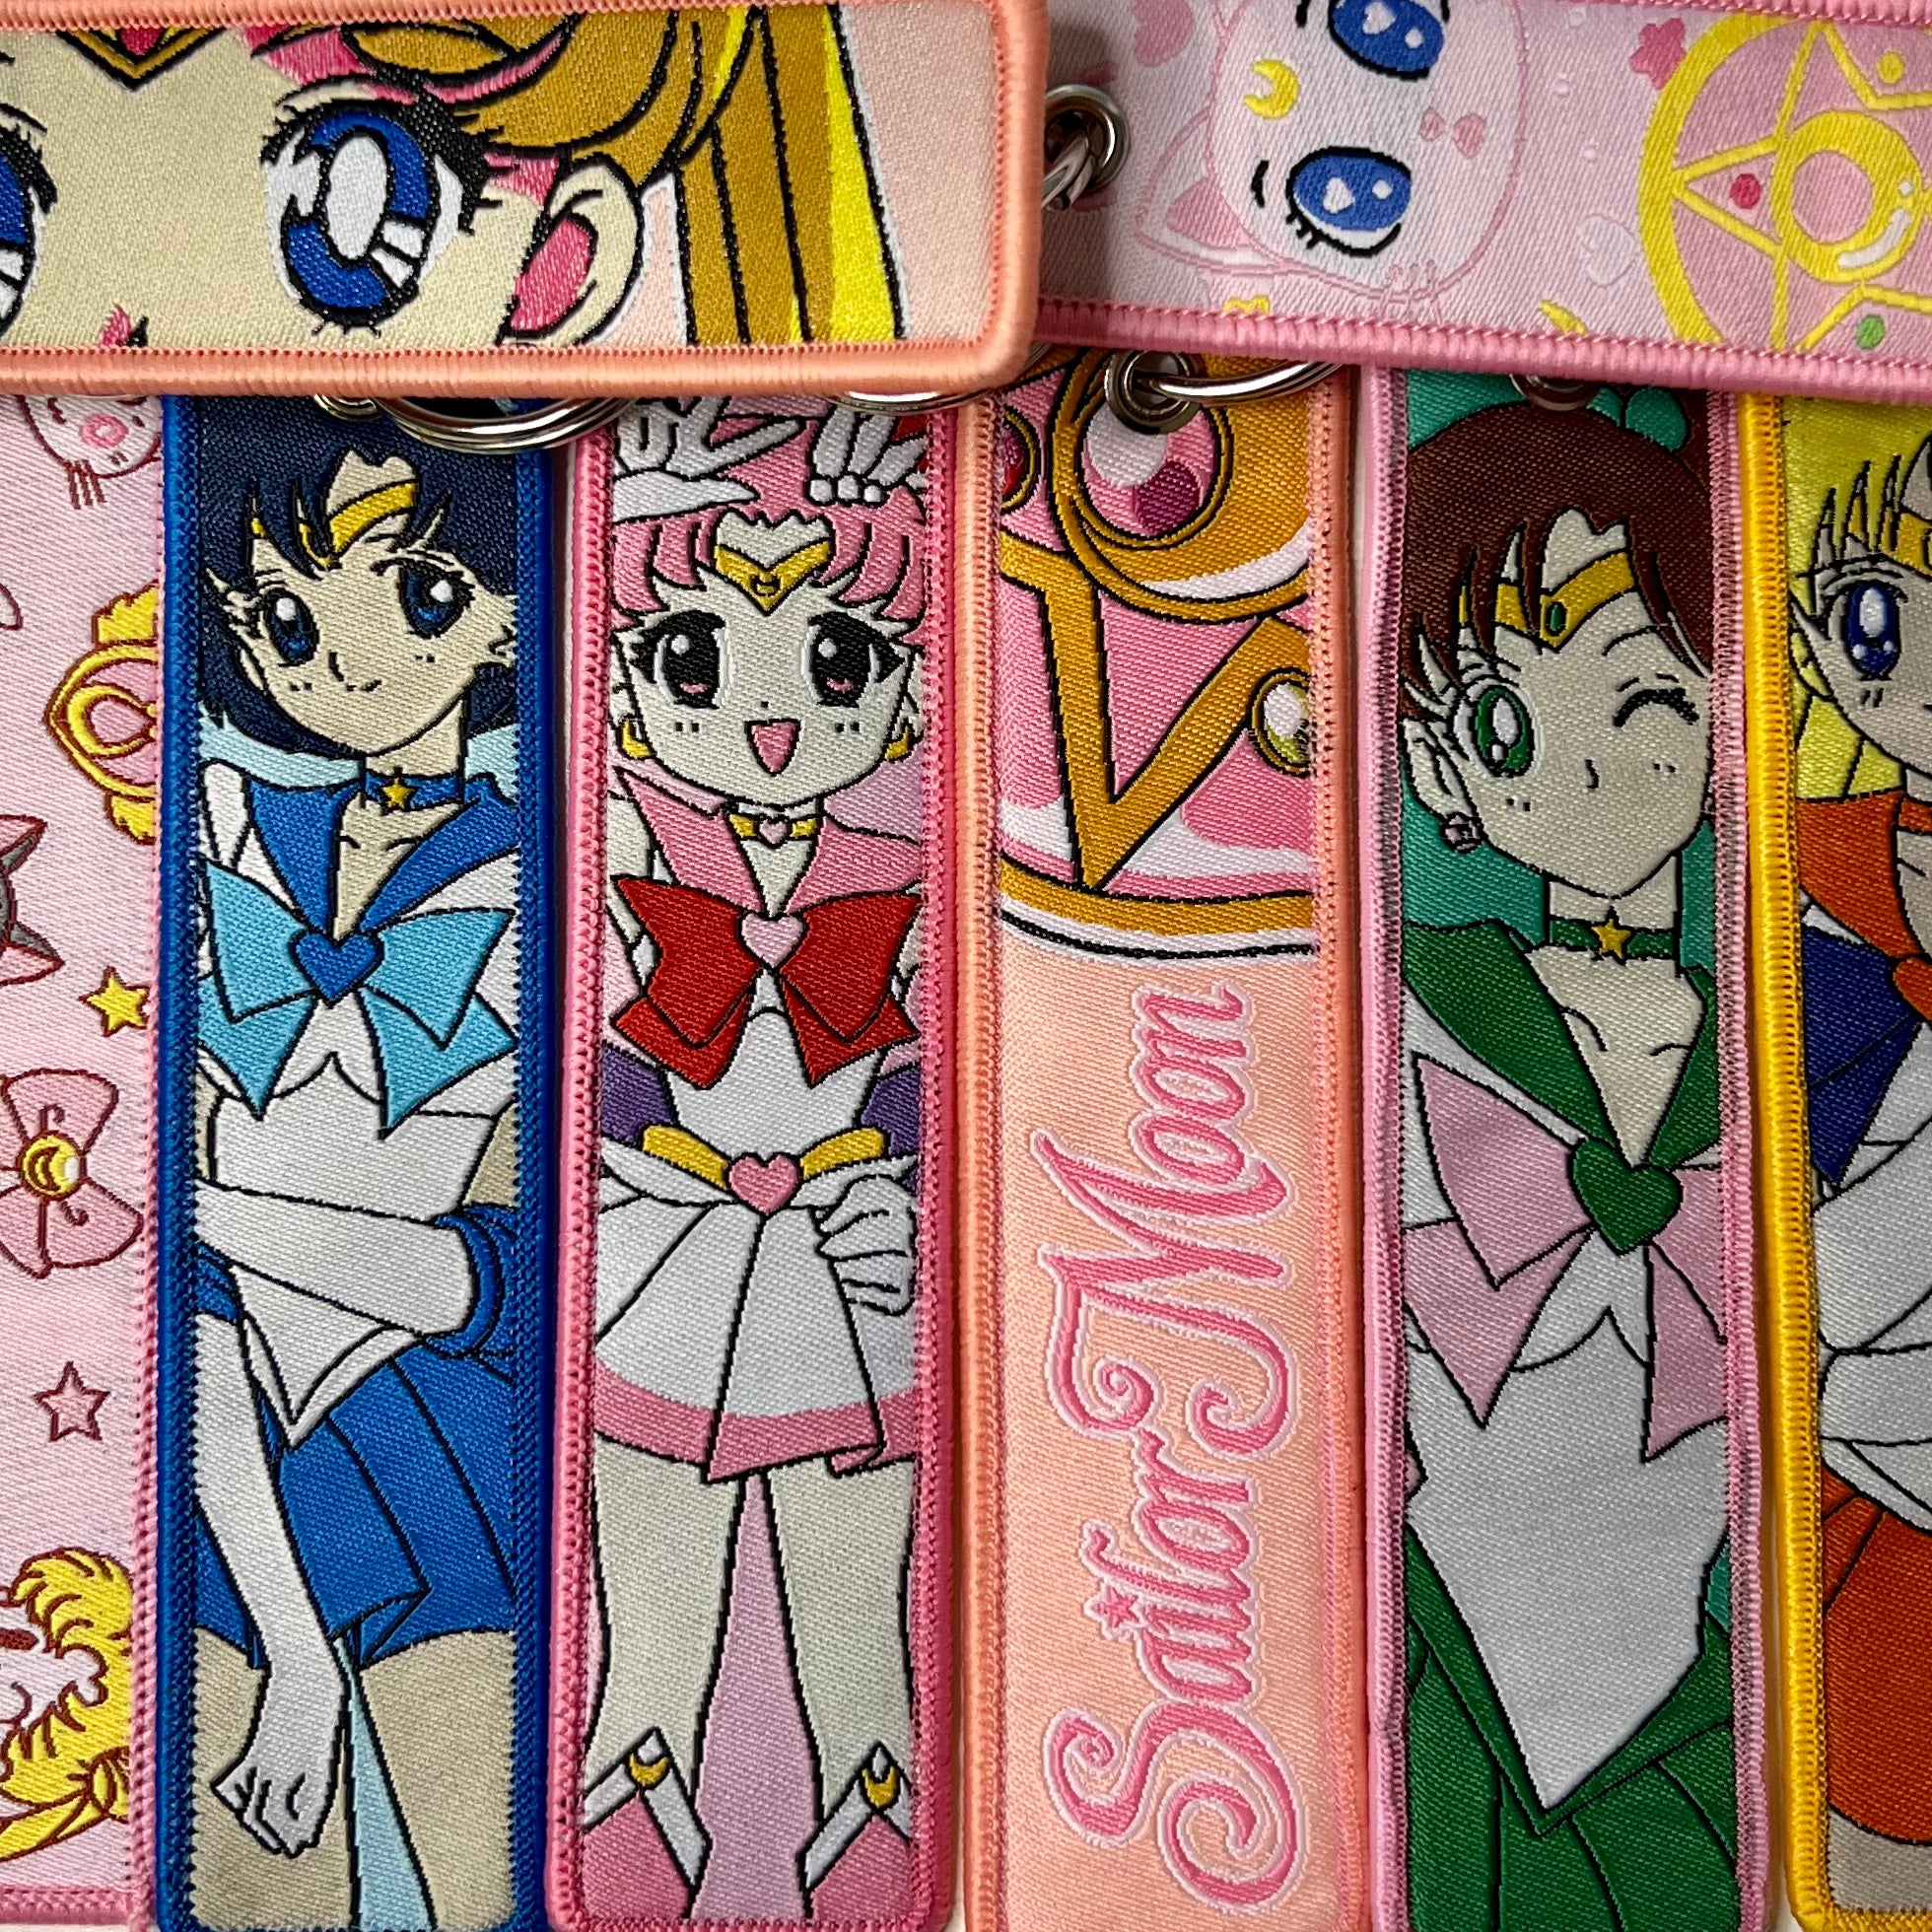 Sailor Moon Key Tag